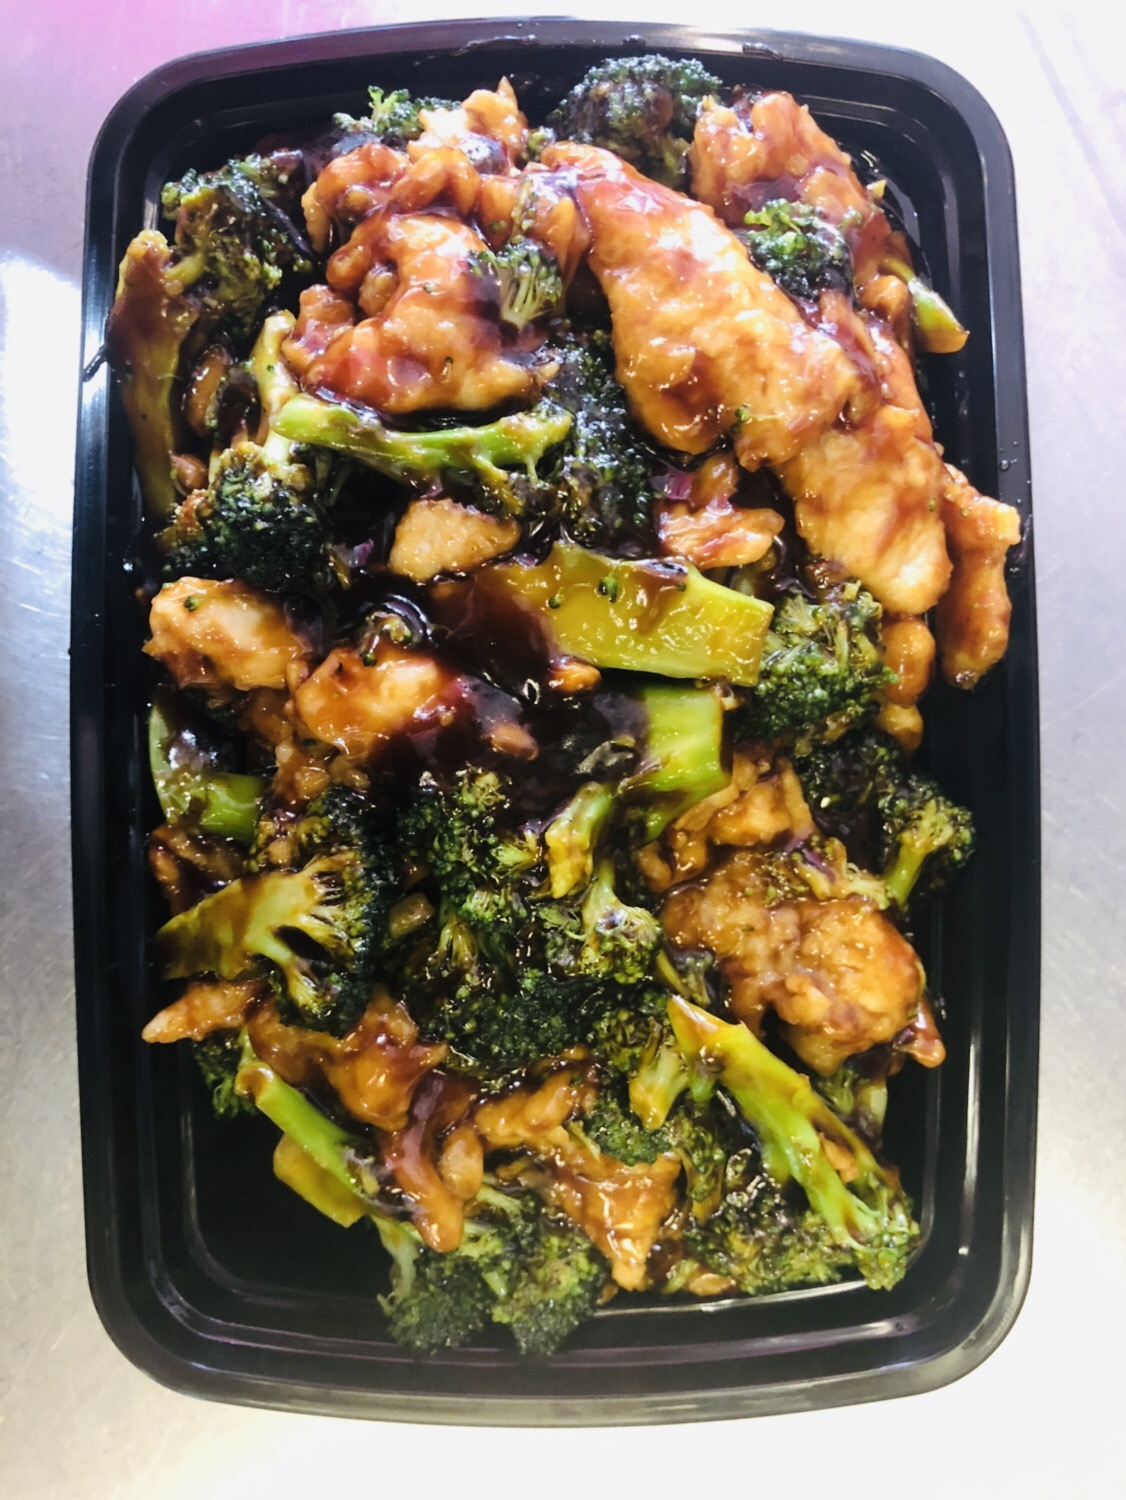 Order 48. Chicken with Broccoli food online from Joyful Garden Restaurant store, Wilmington on bringmethat.com